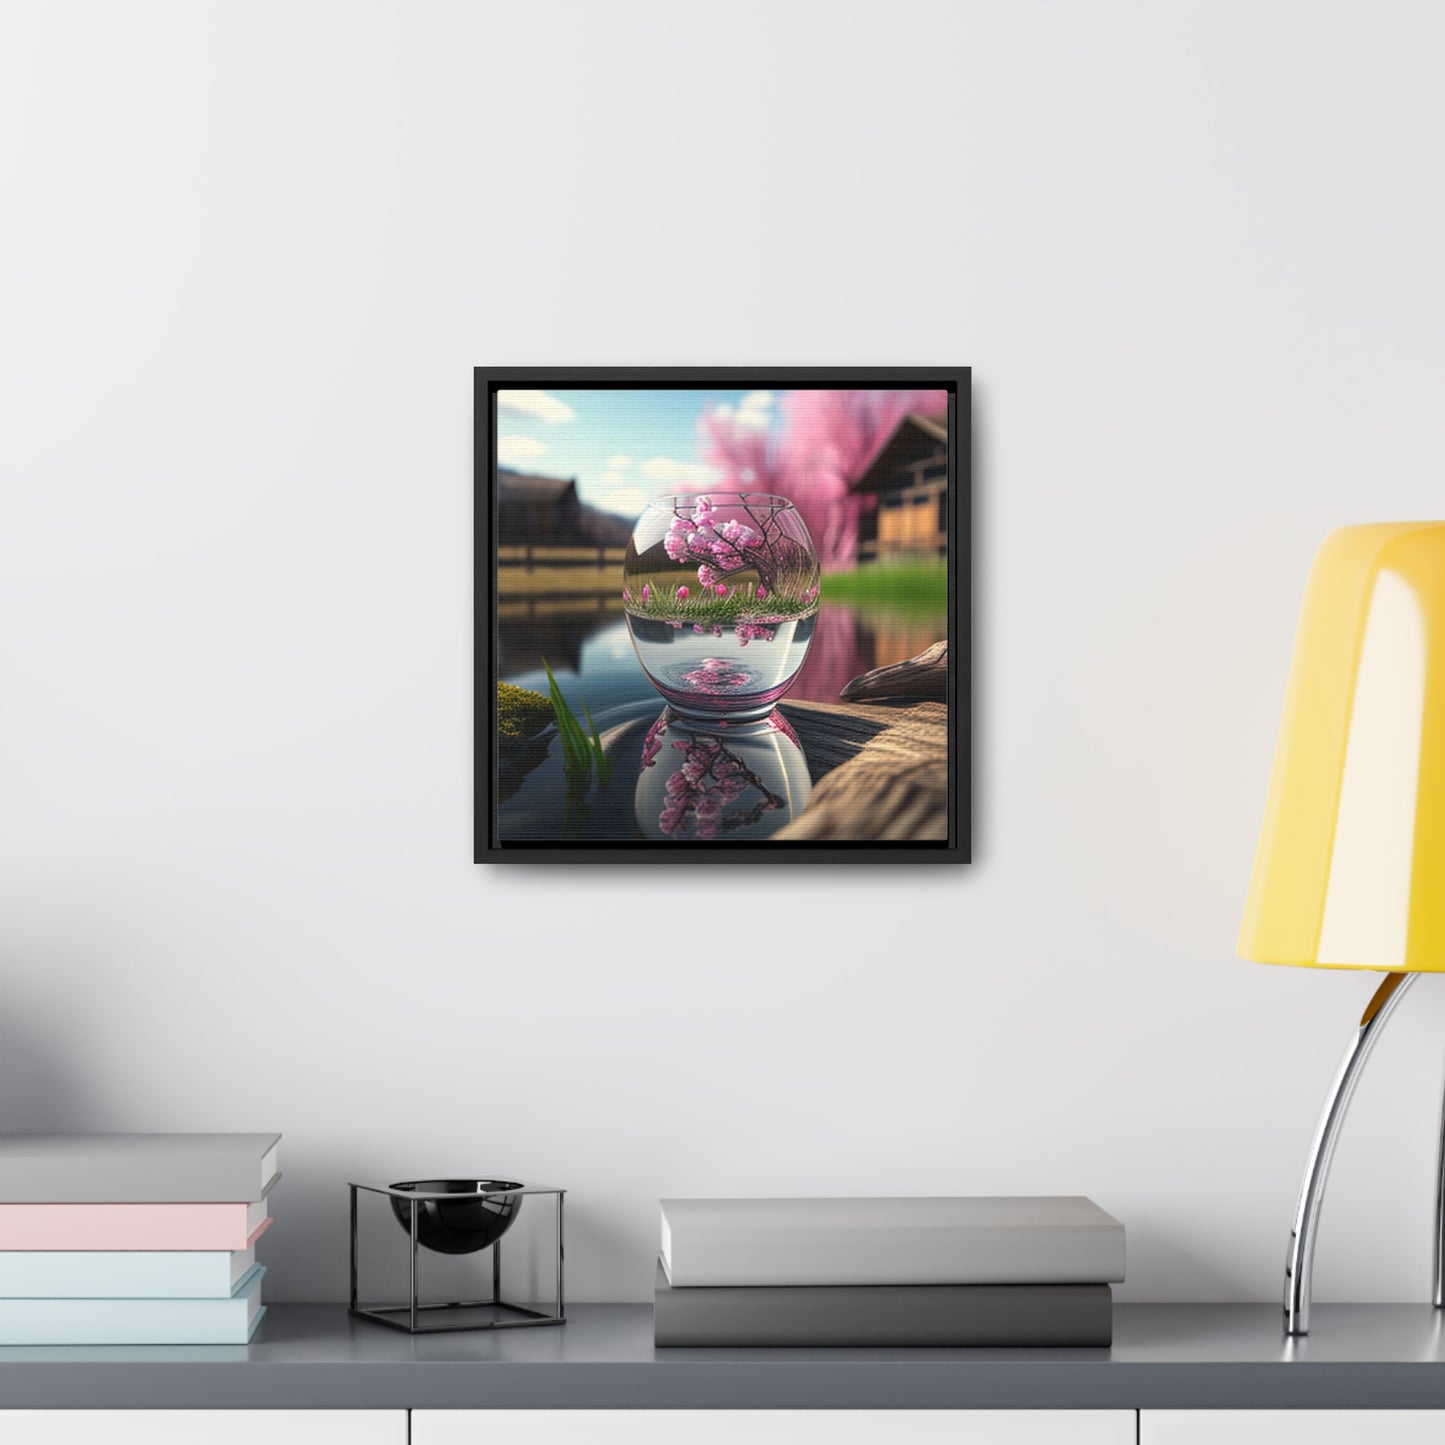 Gallery Canvas Wraps, Square Frame Cherry Blossom 2